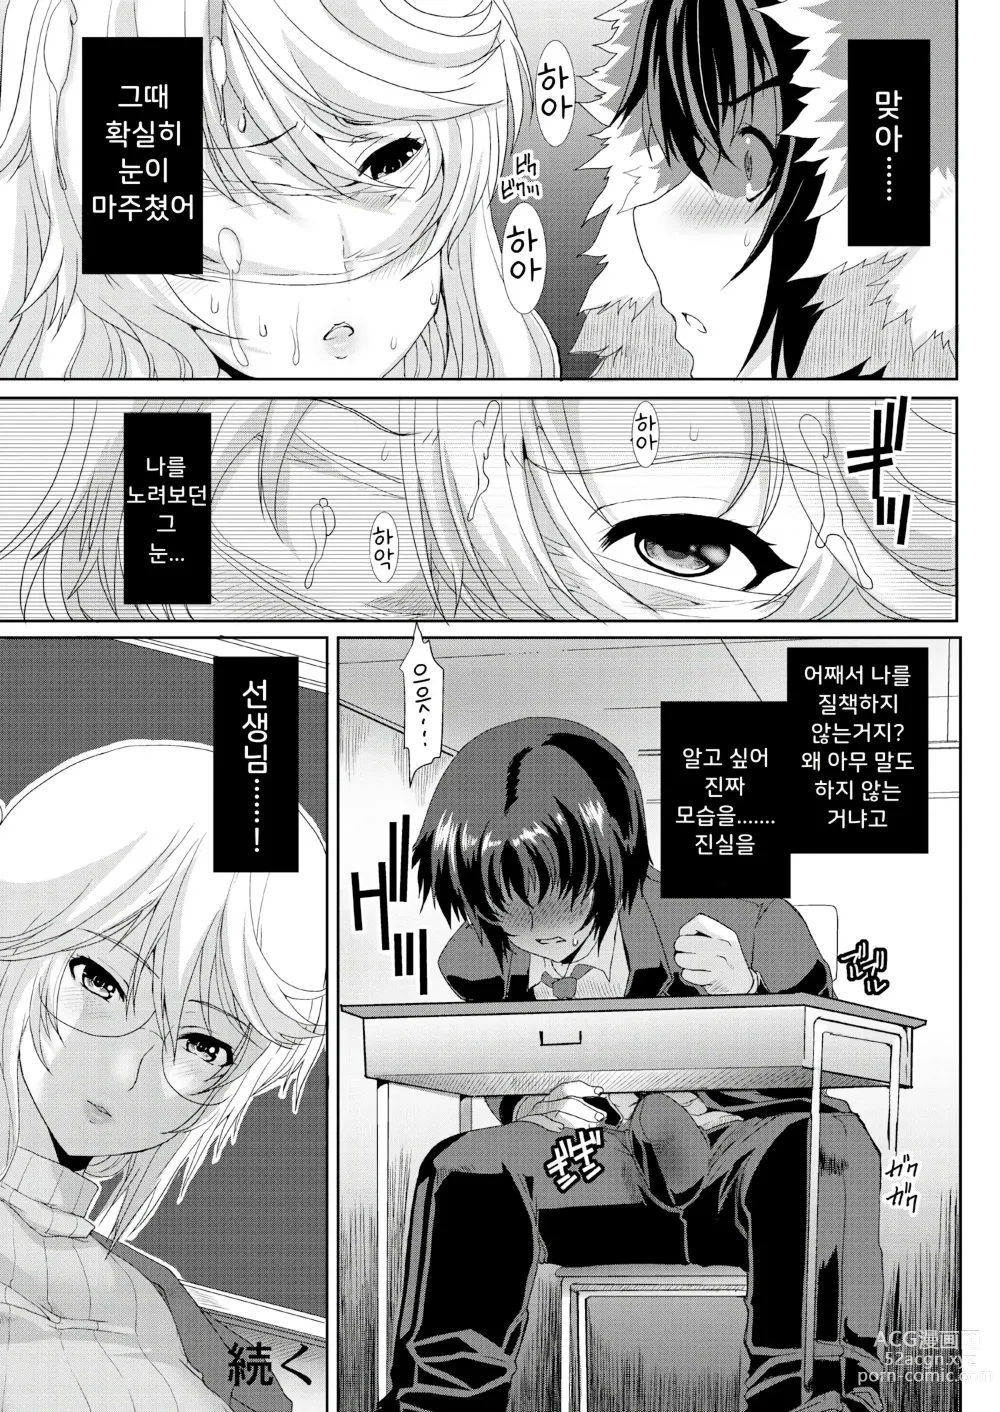 Page 24 of doujinshi 동경하던 그녀(선생님)는 치한전차에서 조교완료 되었습니다 2 ~접근편~